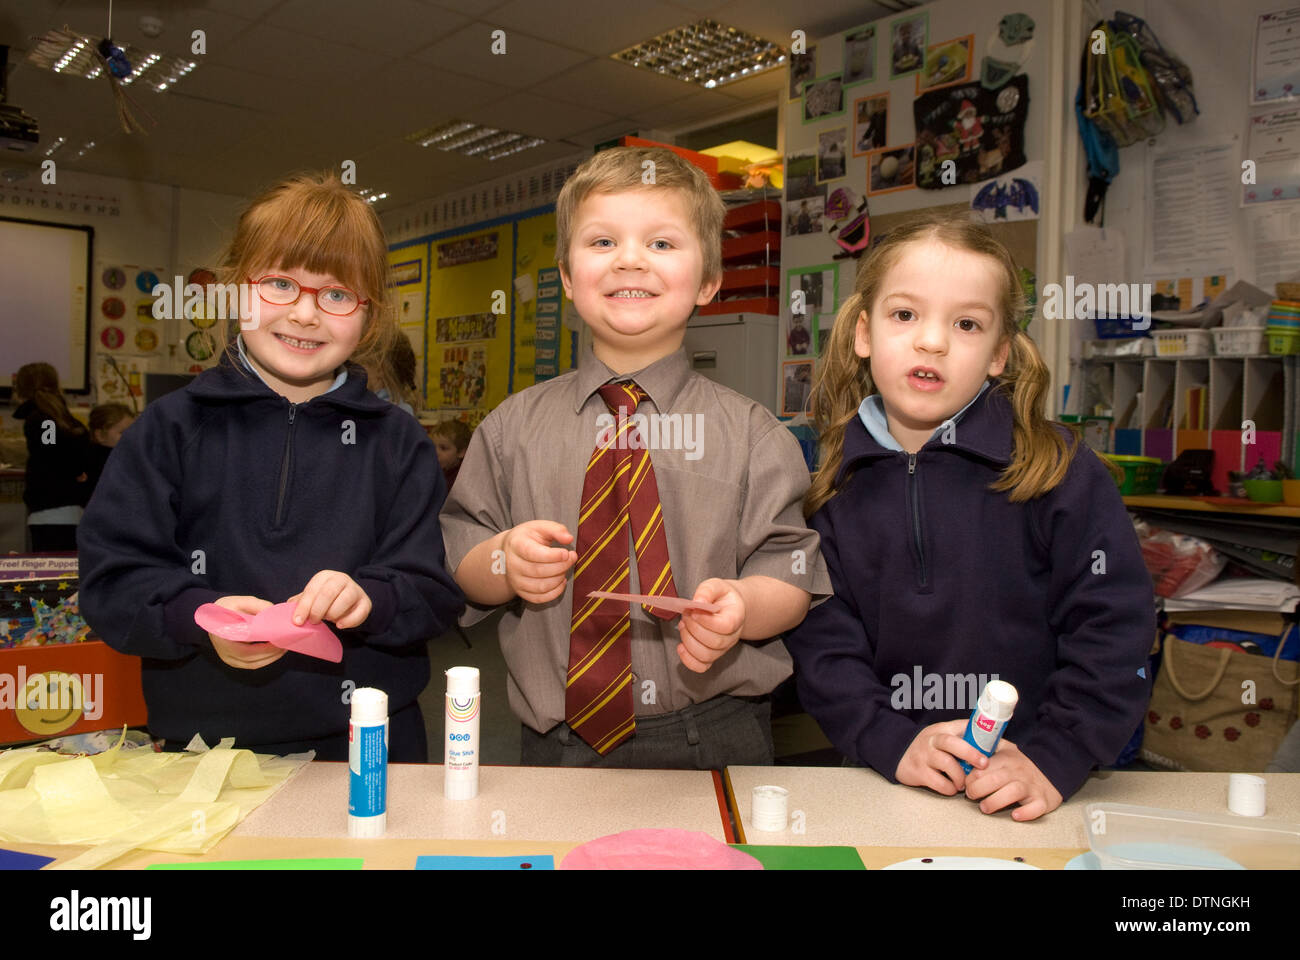 Les enfants de l'école primaire, dans une classe, de l'artisanat entreprise Haslemere, Surrey, UK. Banque D'Images